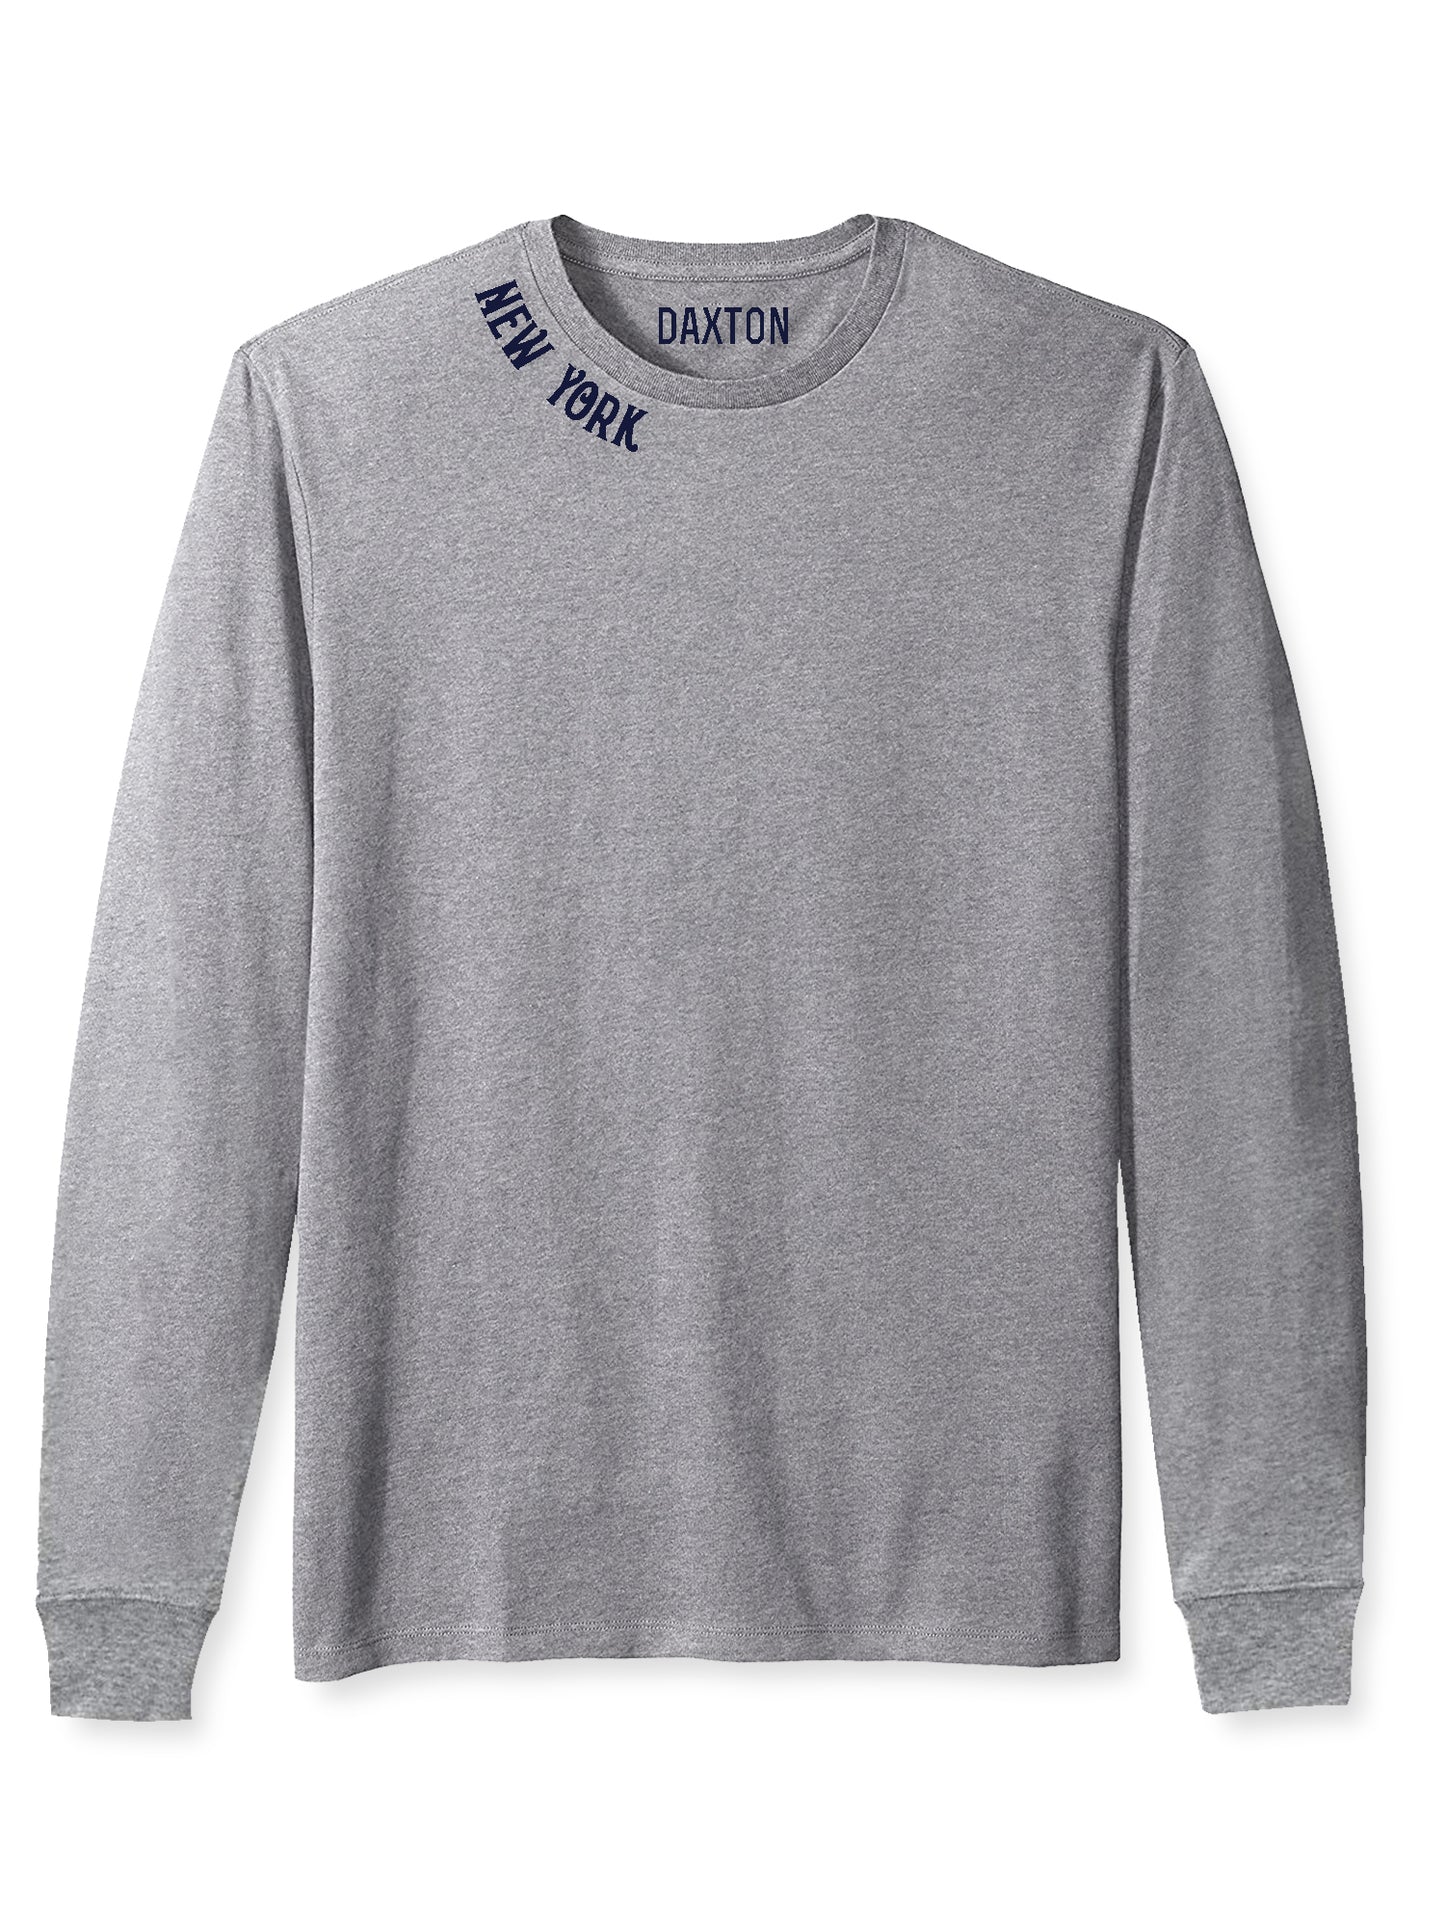 Daxton Premium New York Men Long Sleeves T Shirt Ultra Soft Medium Weight Cotton